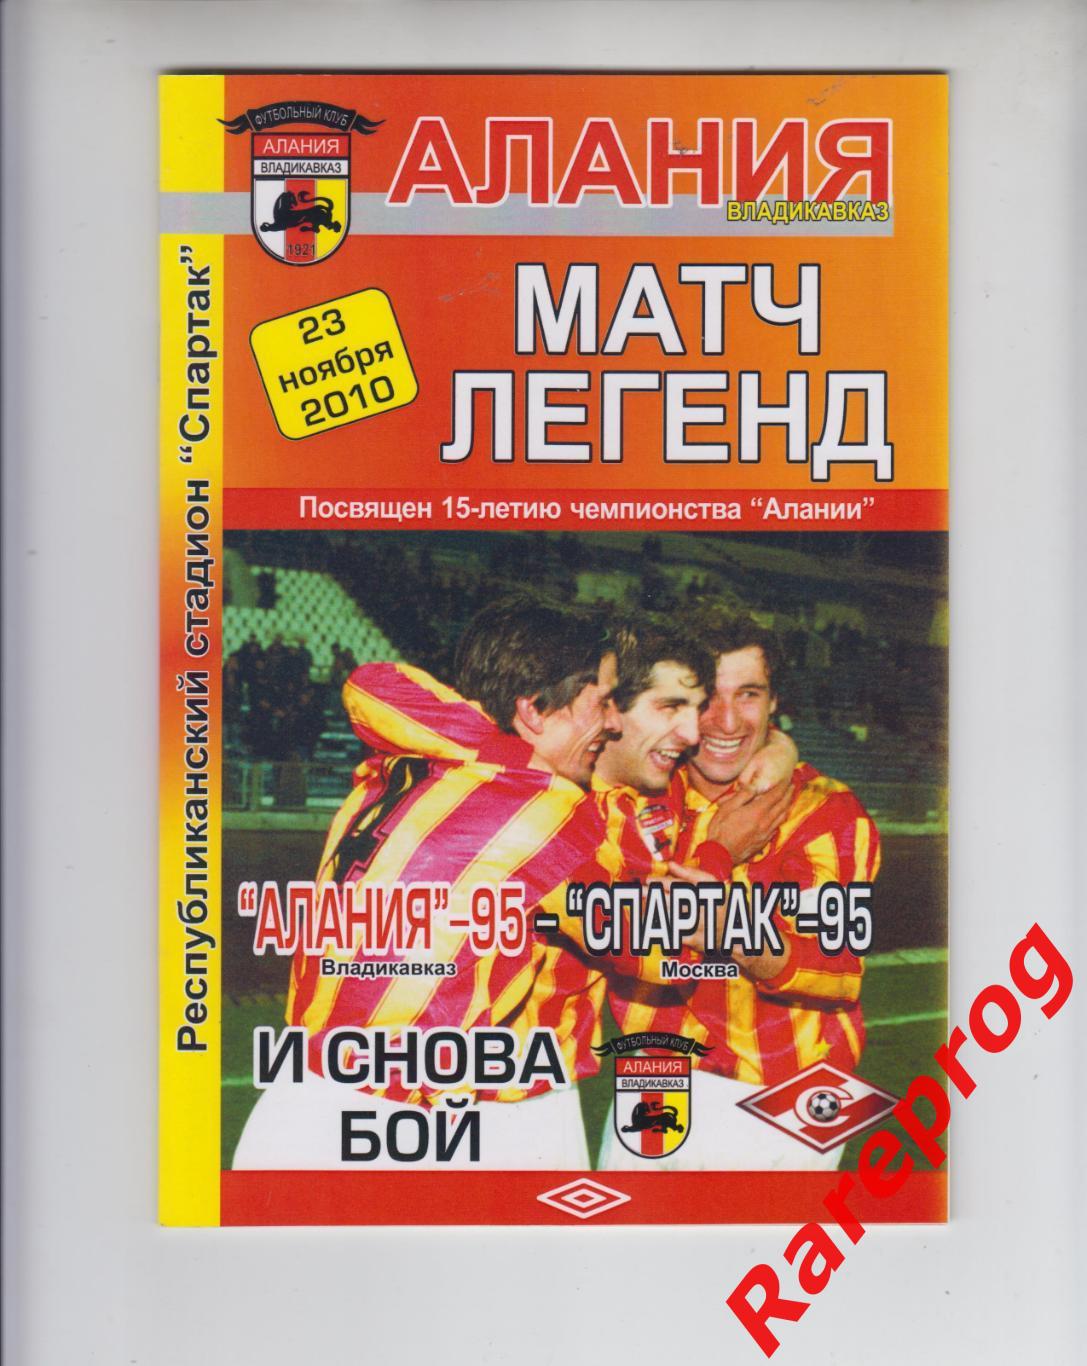 Алания - 95 - Спартак Москва - 95 - 2010 Матч Легенд